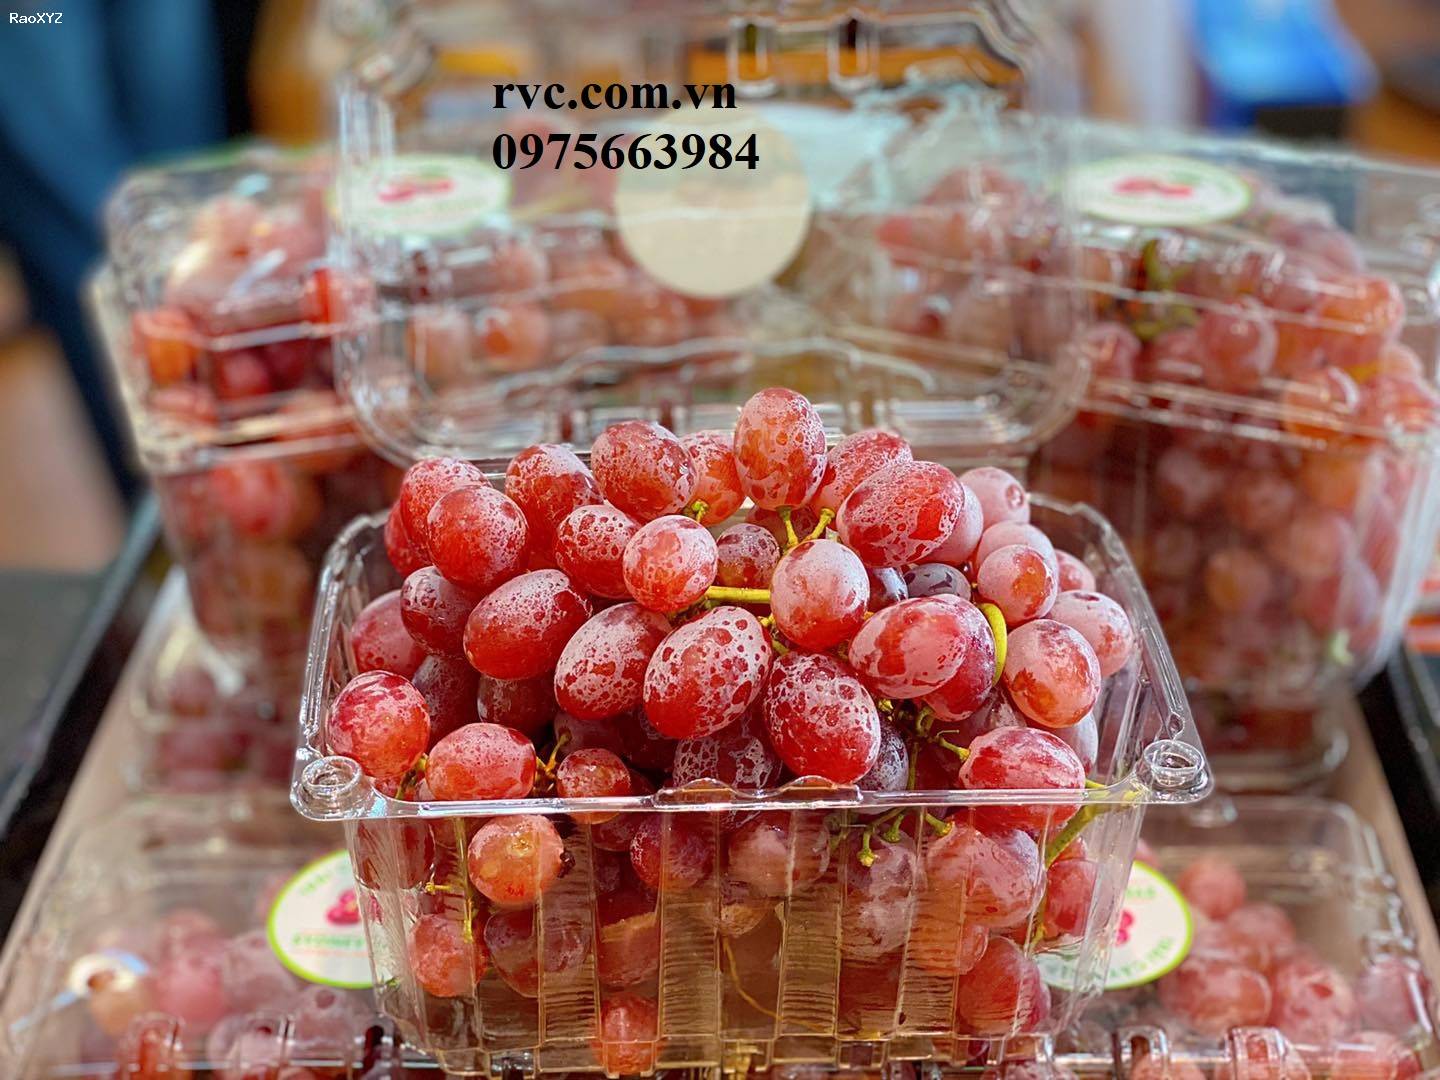 Hộp nhựa trái cây 1kg P1000B đạt chuẩn an toàn thực phẩm